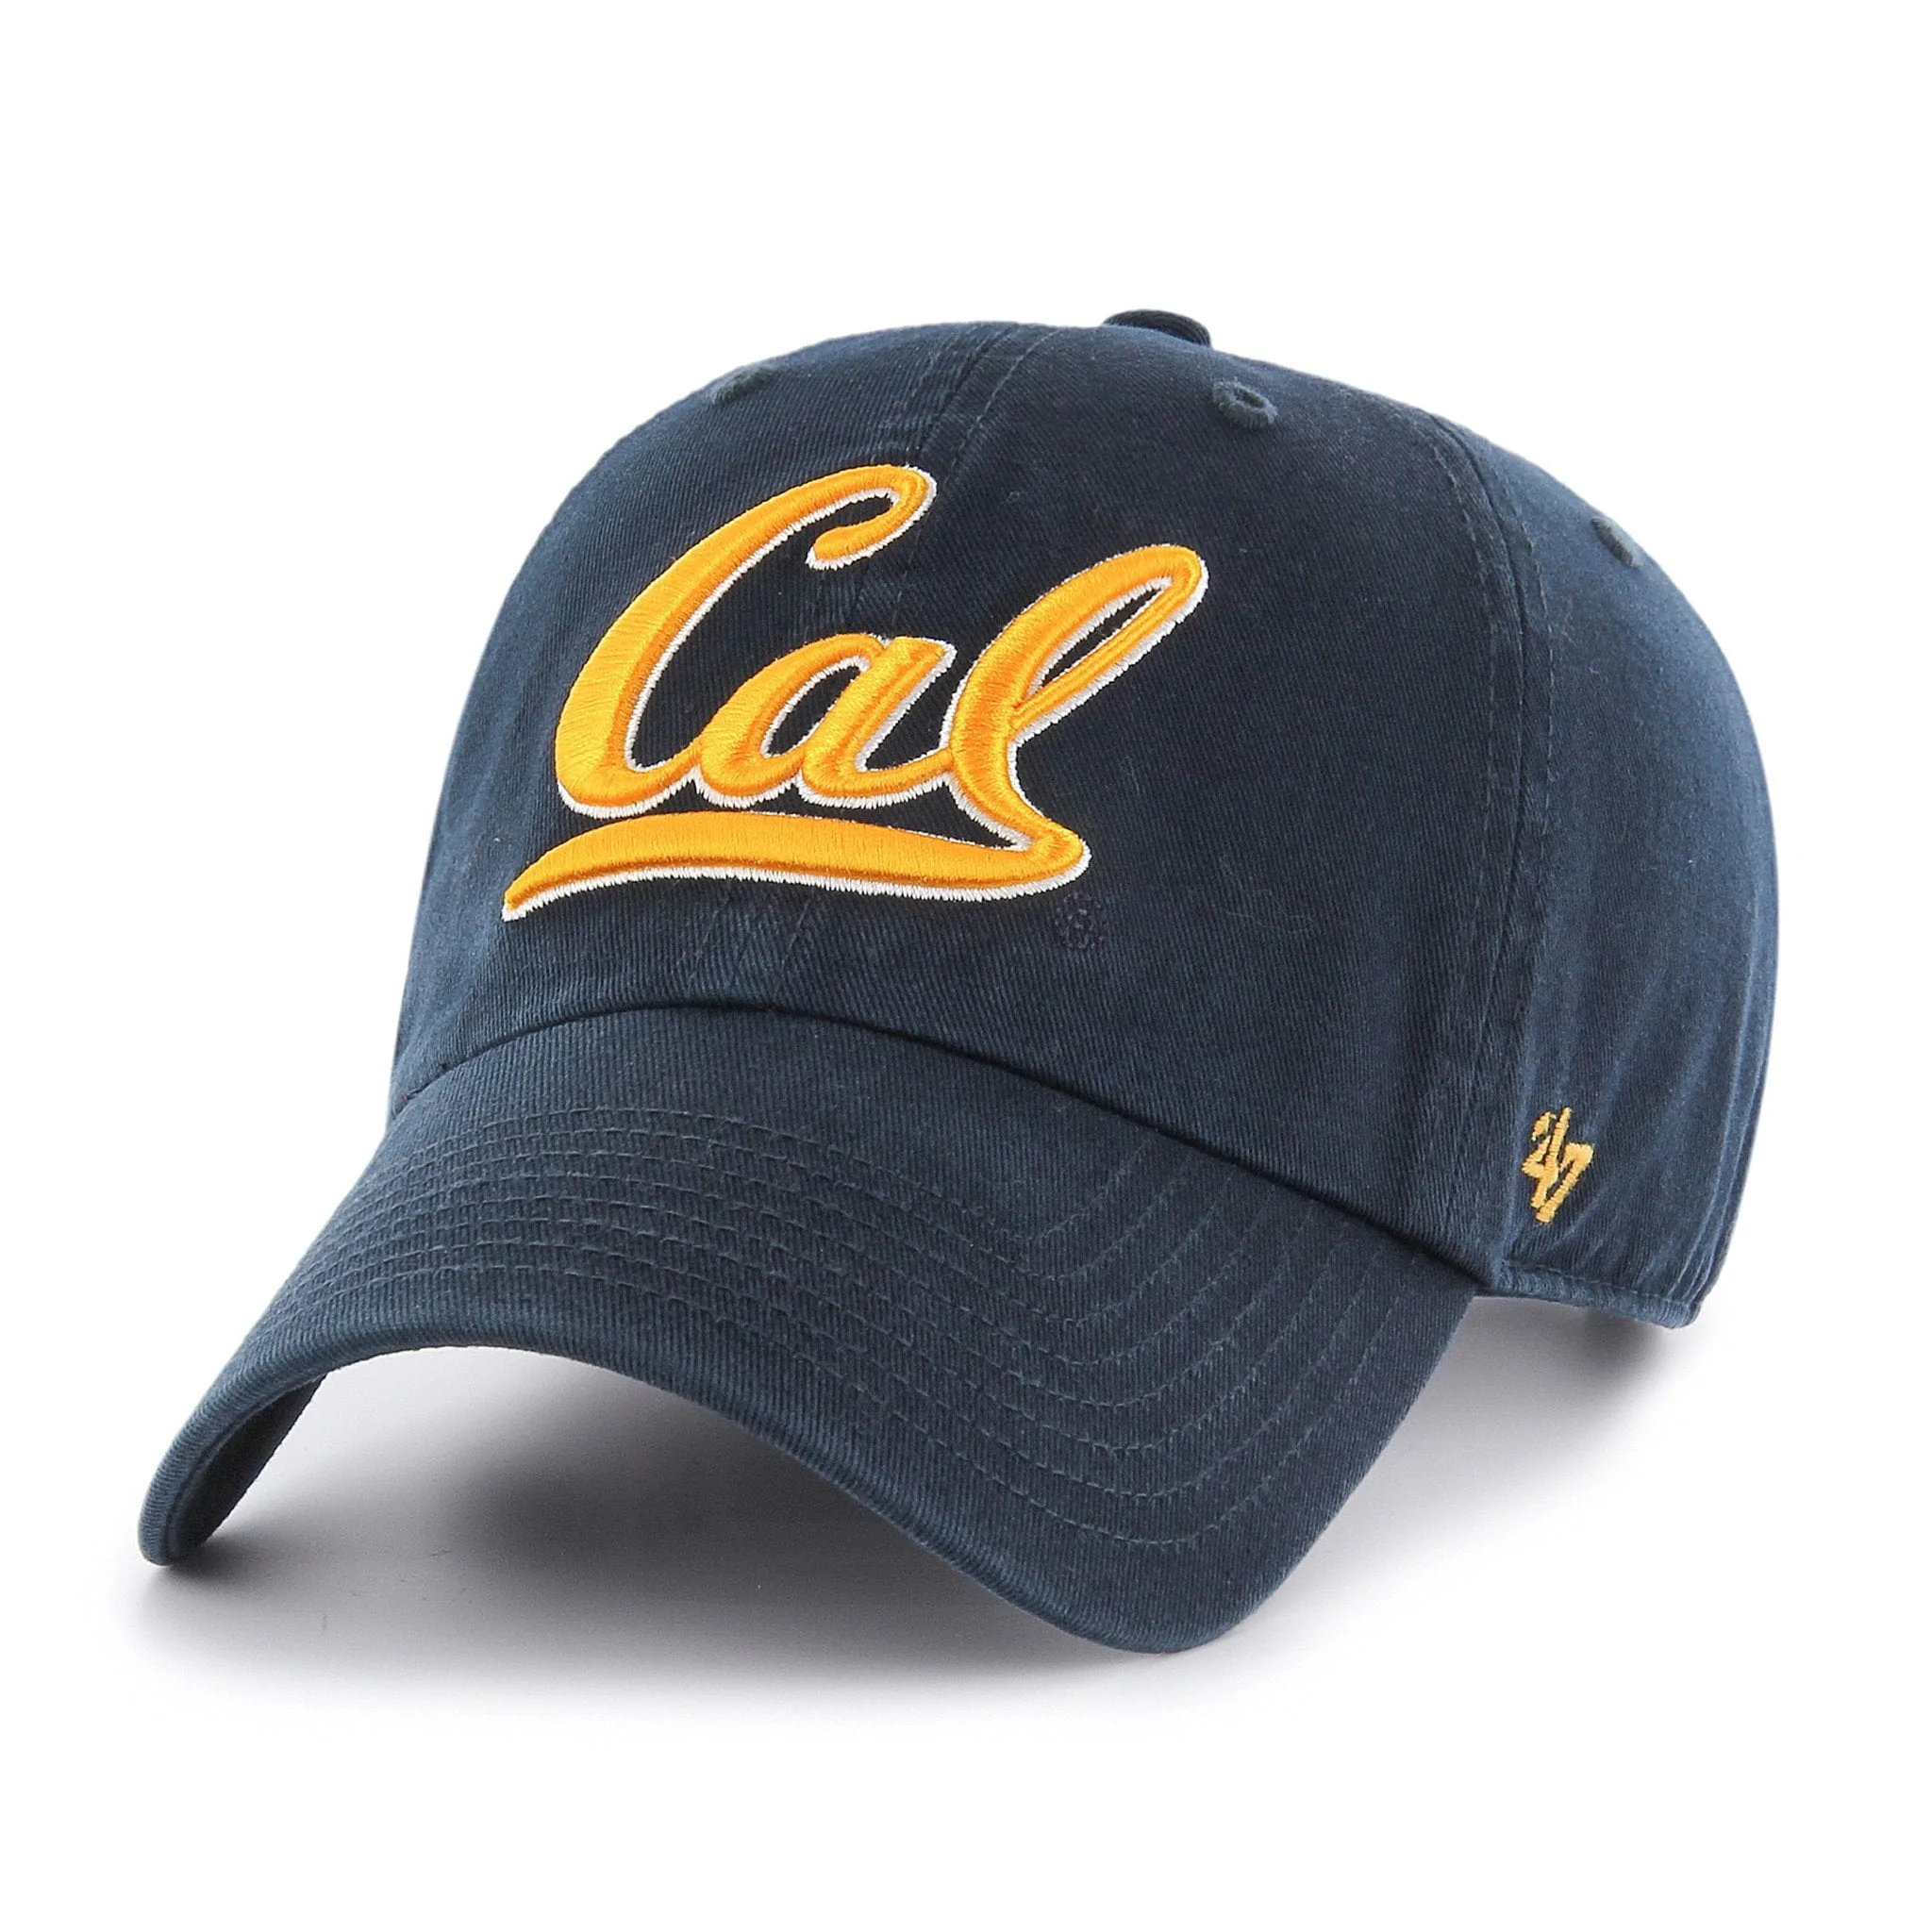 '47 Cal Berkeley Golden Bears Clean Up Adjustable Hat-Navy